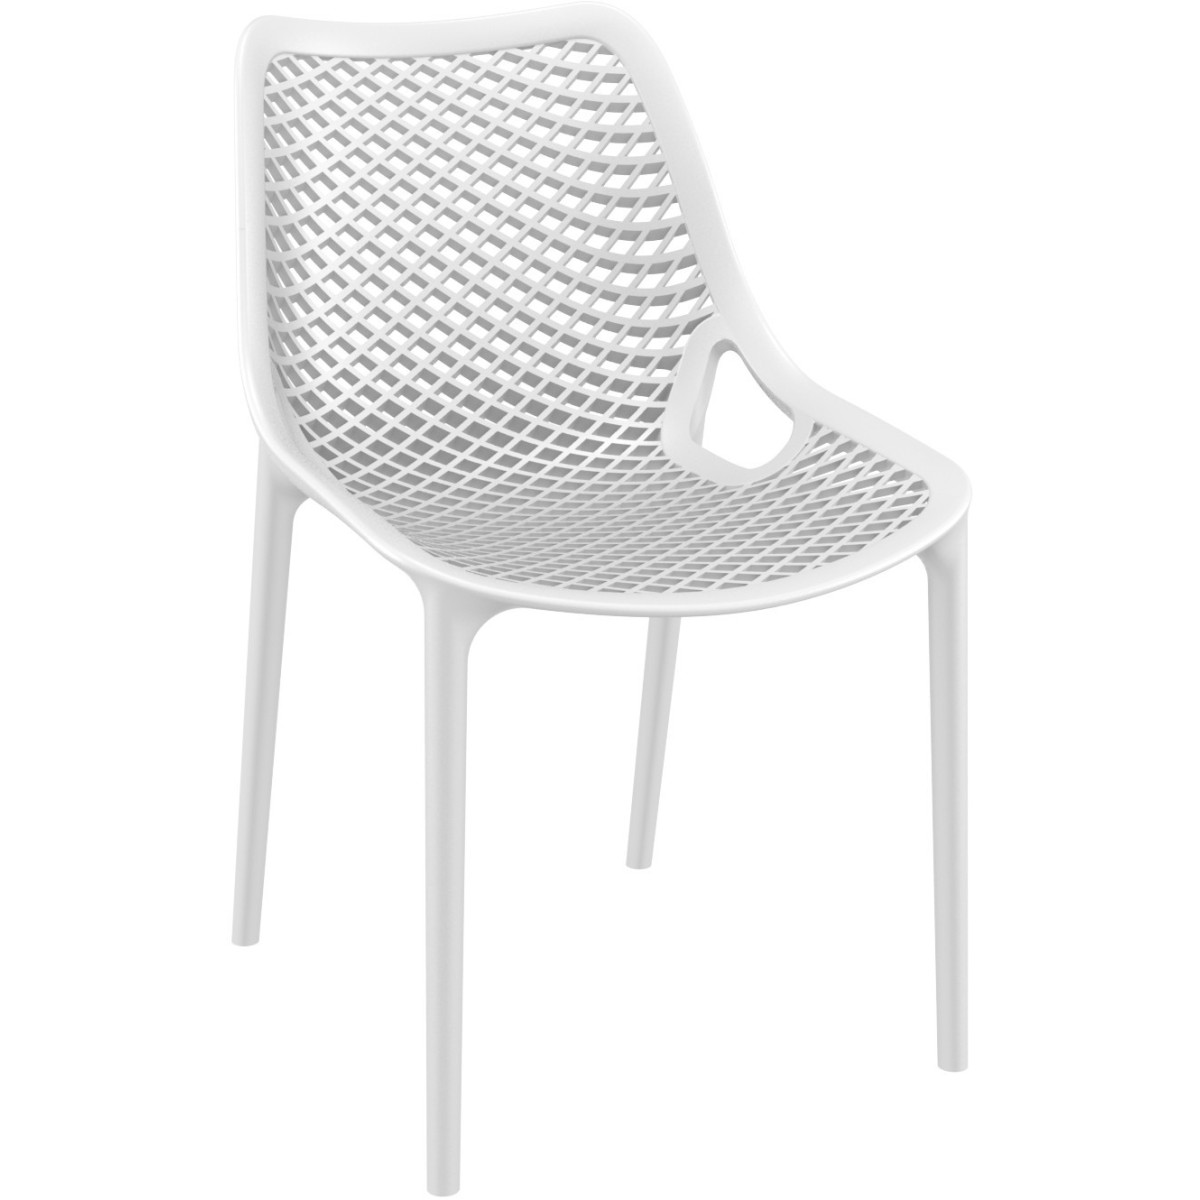 Empilable exterieur chaise monobloc polypropylene terrasse air blanc 3/4 face